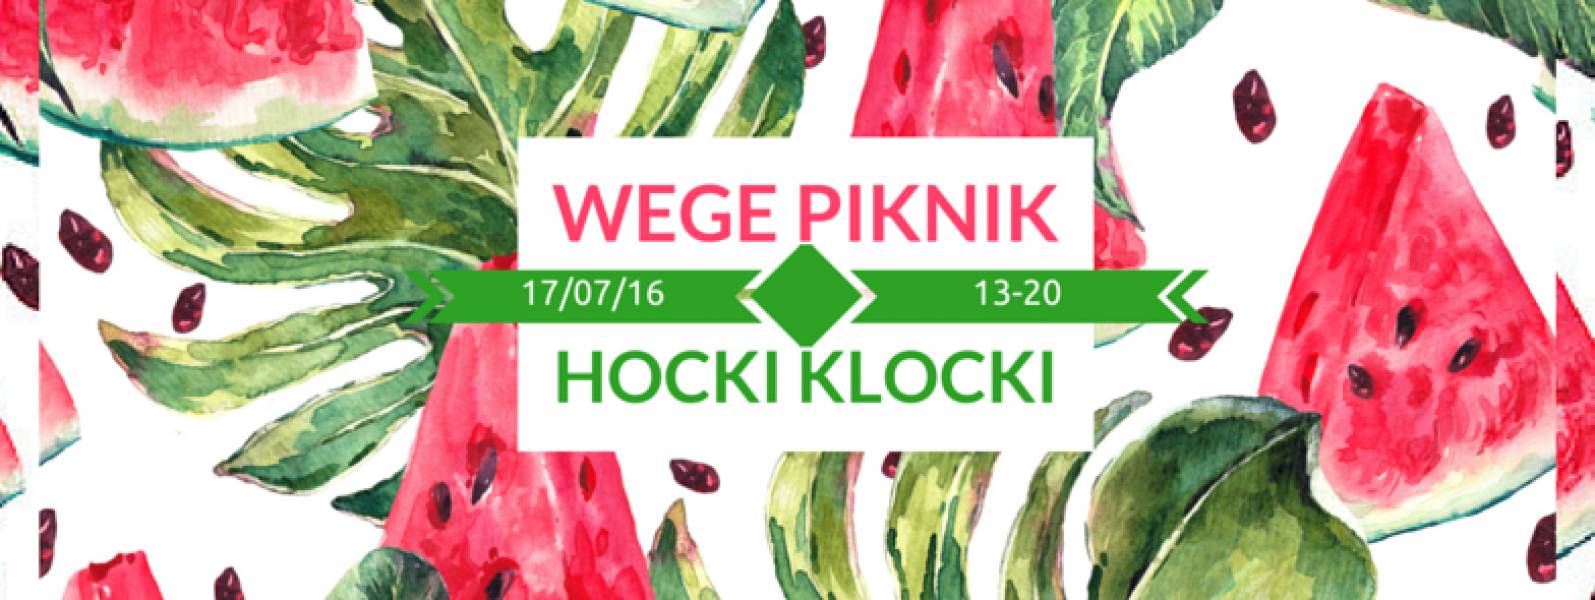 17 LIPCA- WEGE PIKNIK – HOCKI KLOCKI – WARSZAWA